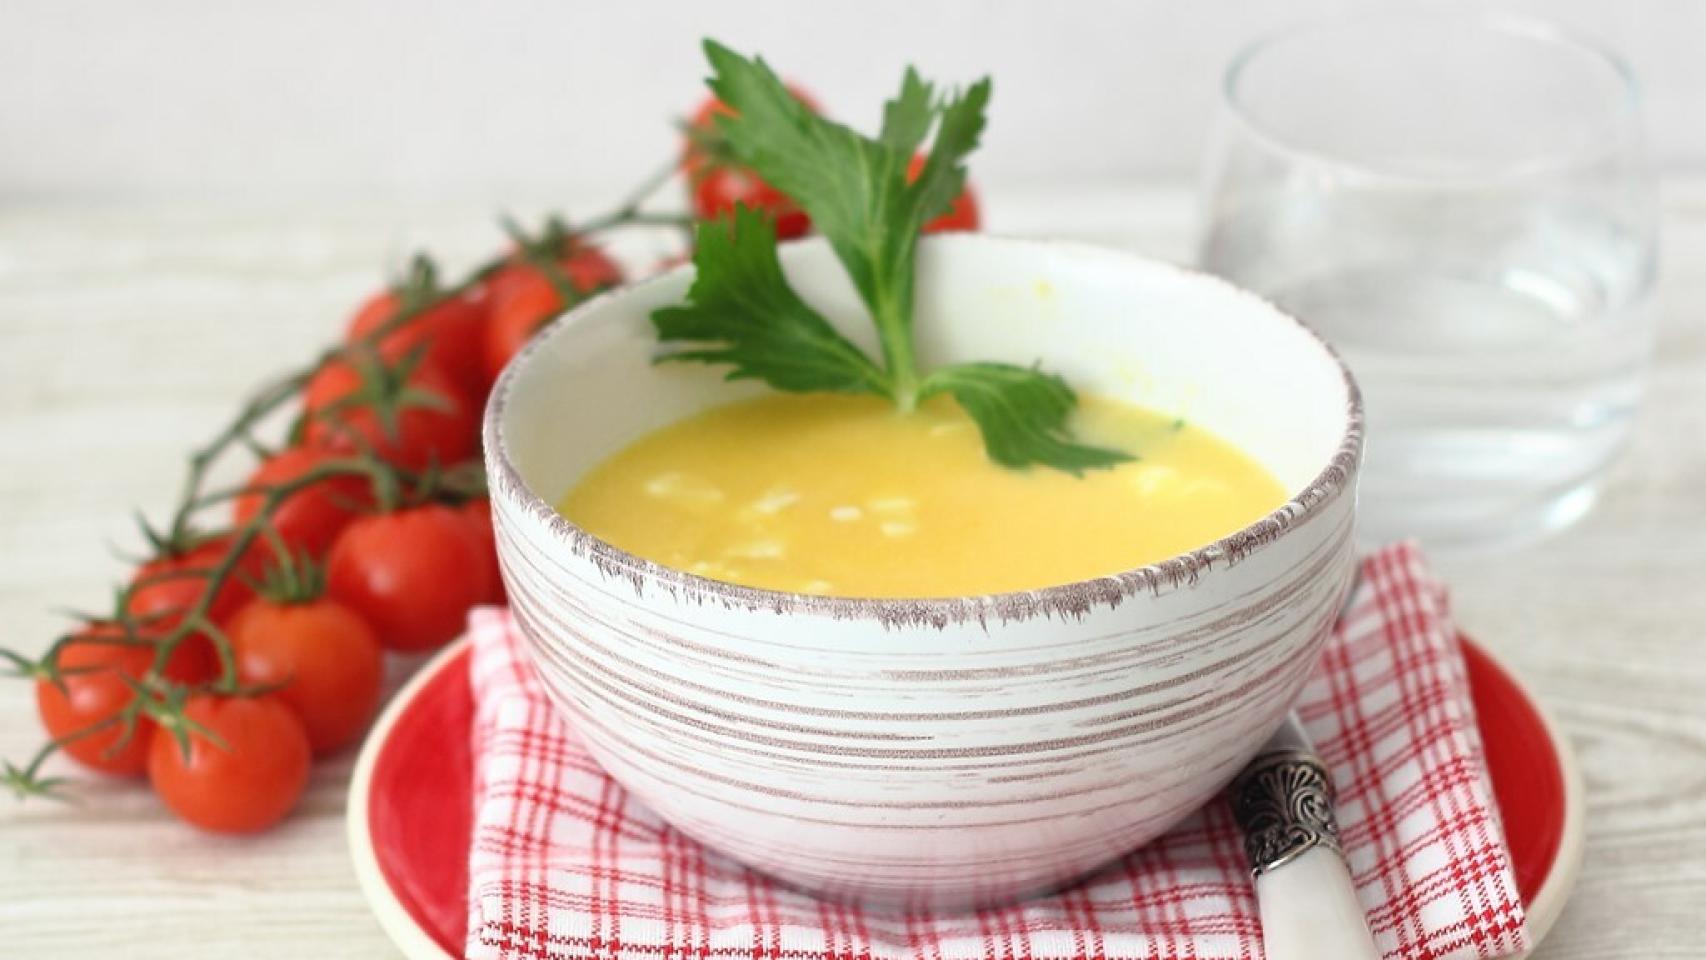 Sopa de huevo rápida, receta fácil en 2 minutos